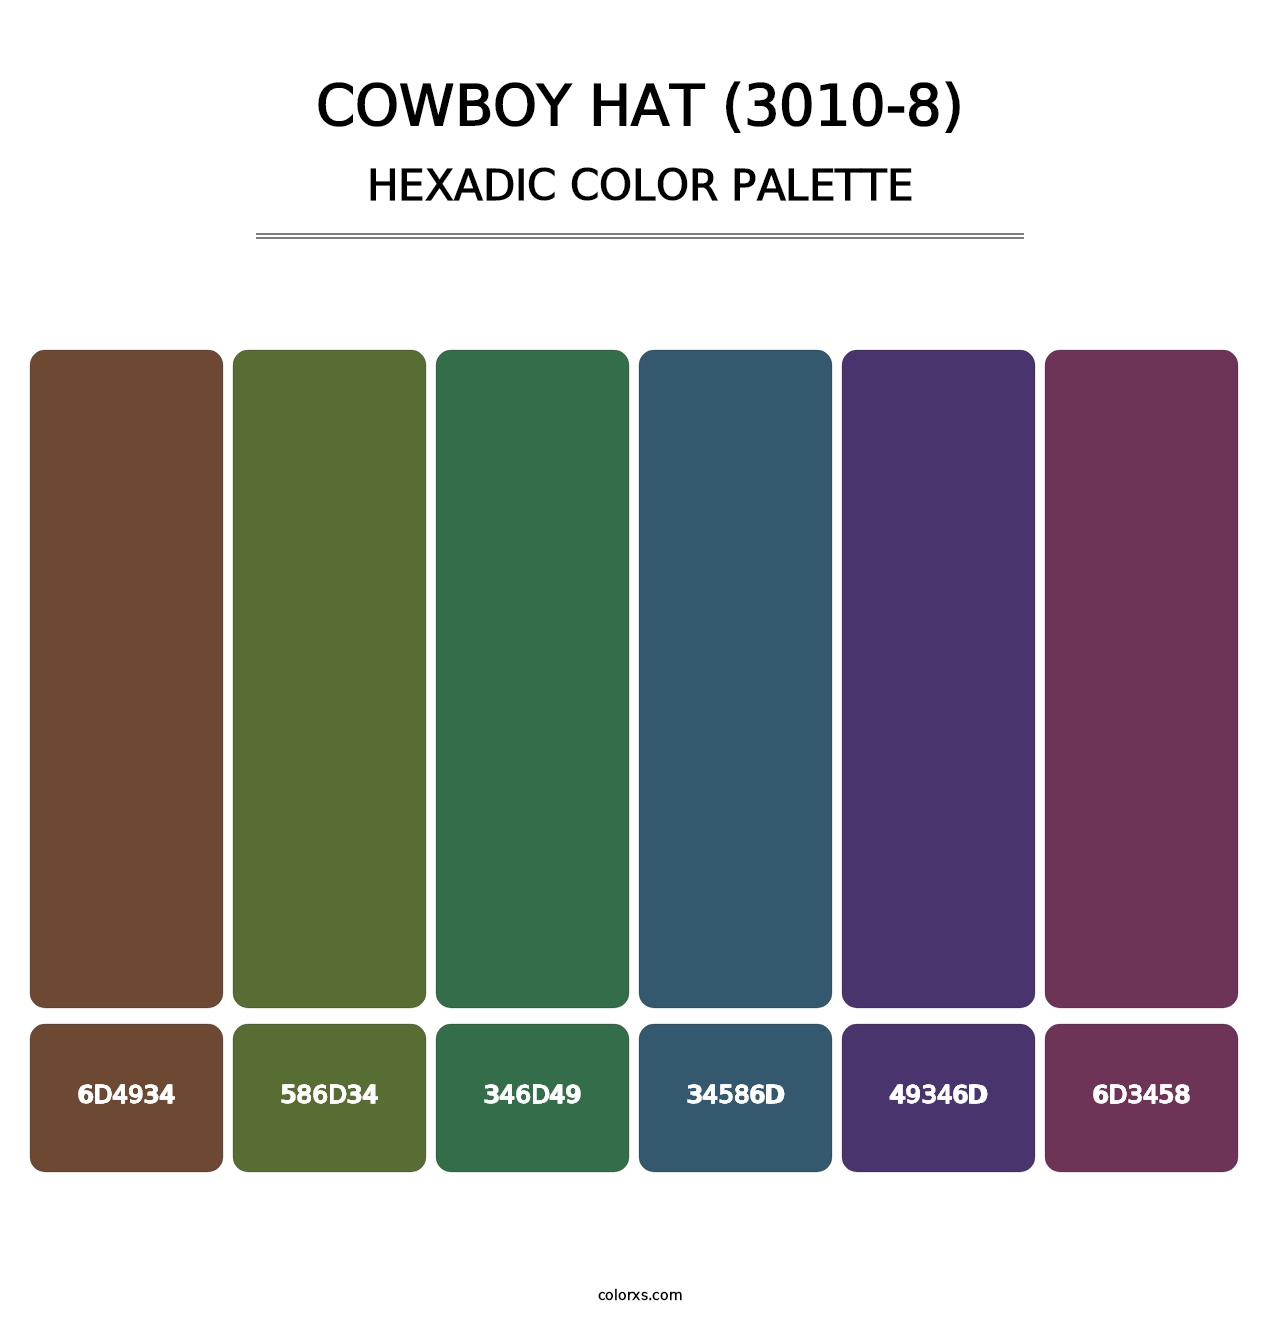 Cowboy Hat (3010-8) - Hexadic Color Palette